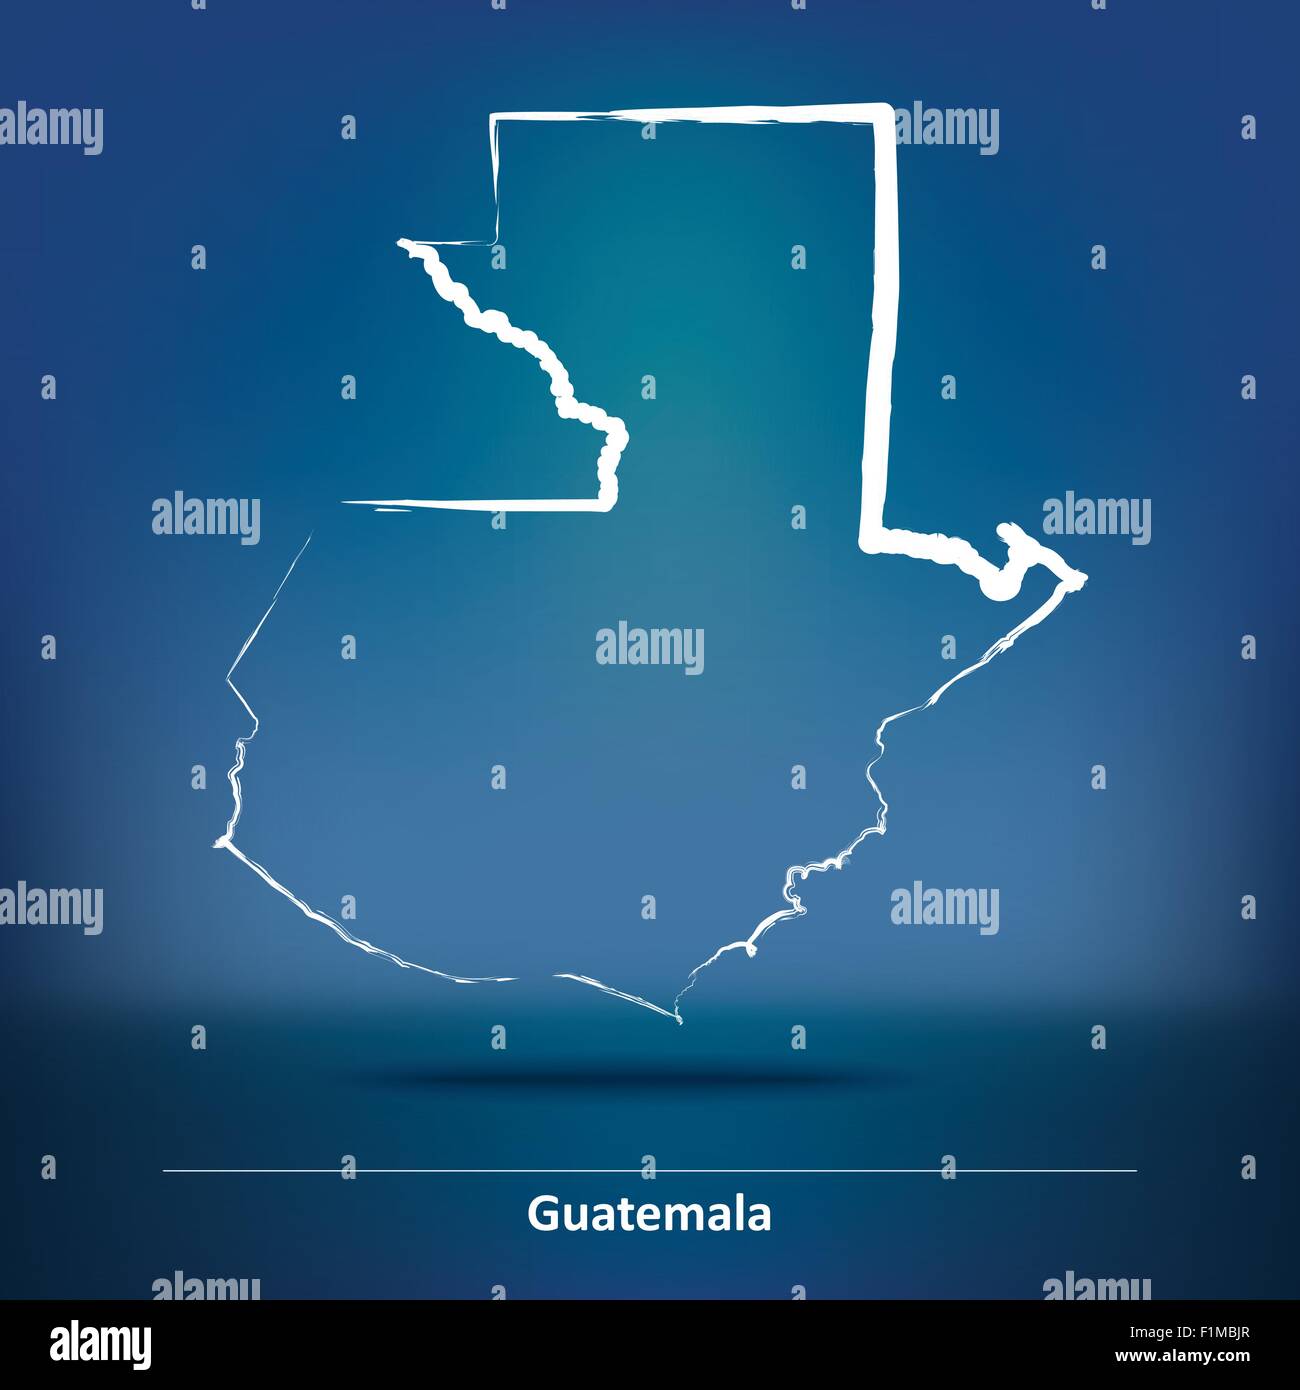 Karte von Guatemala - Vektor-Illustration Doodle Stock Vektor